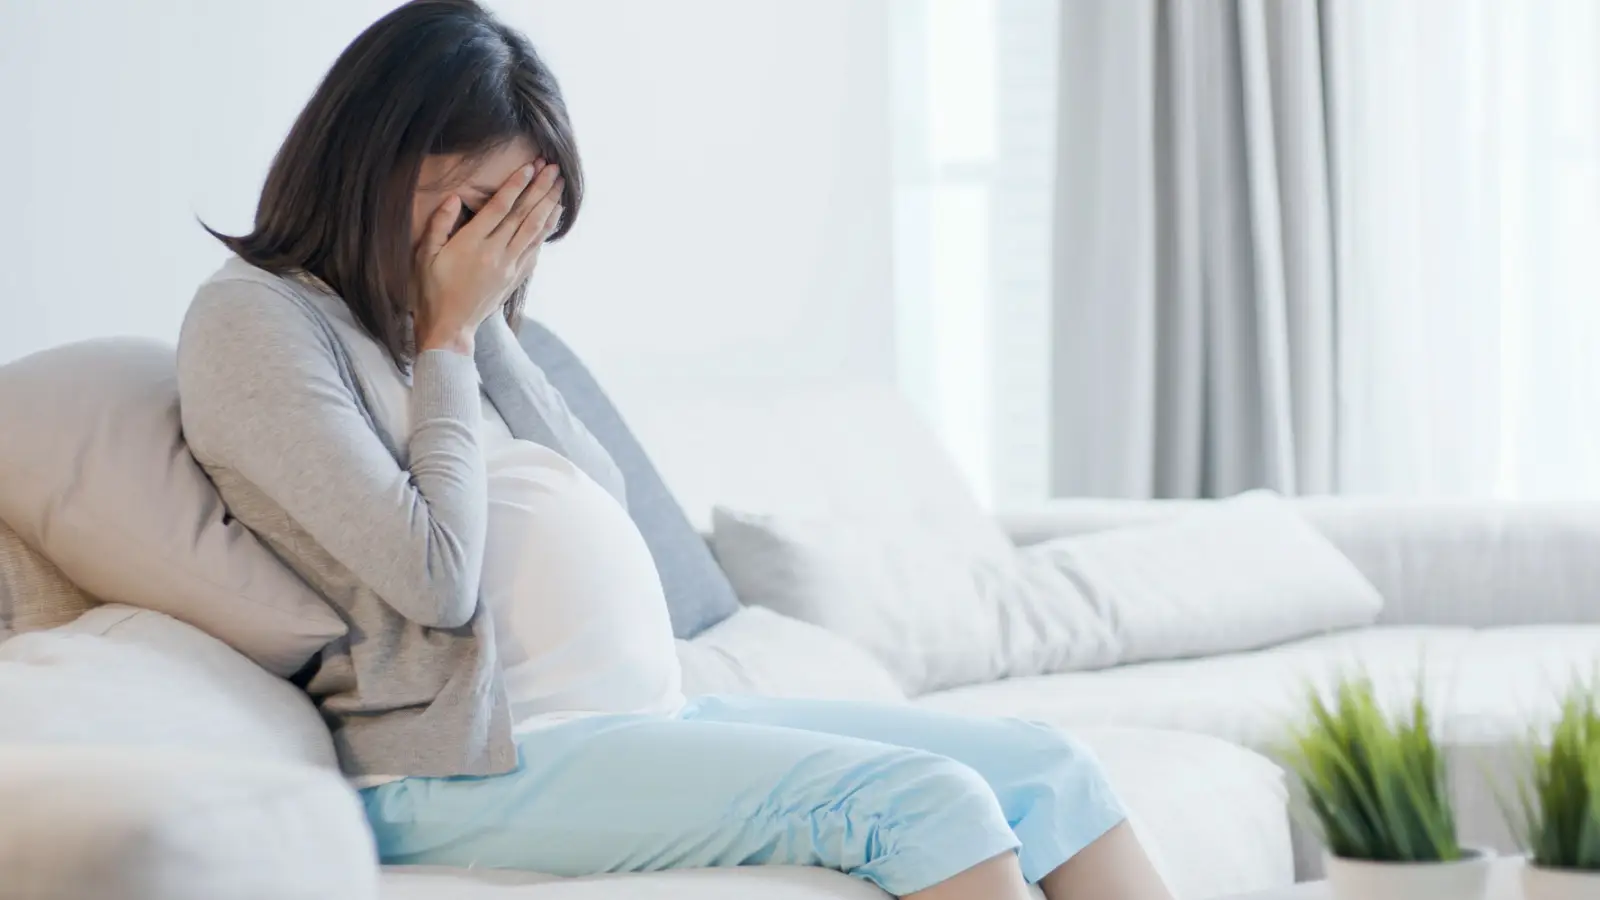 ما هو اكتئاب الحمل؟ وما أسبابه؟ وكيف يمكن التغلب عليه؟